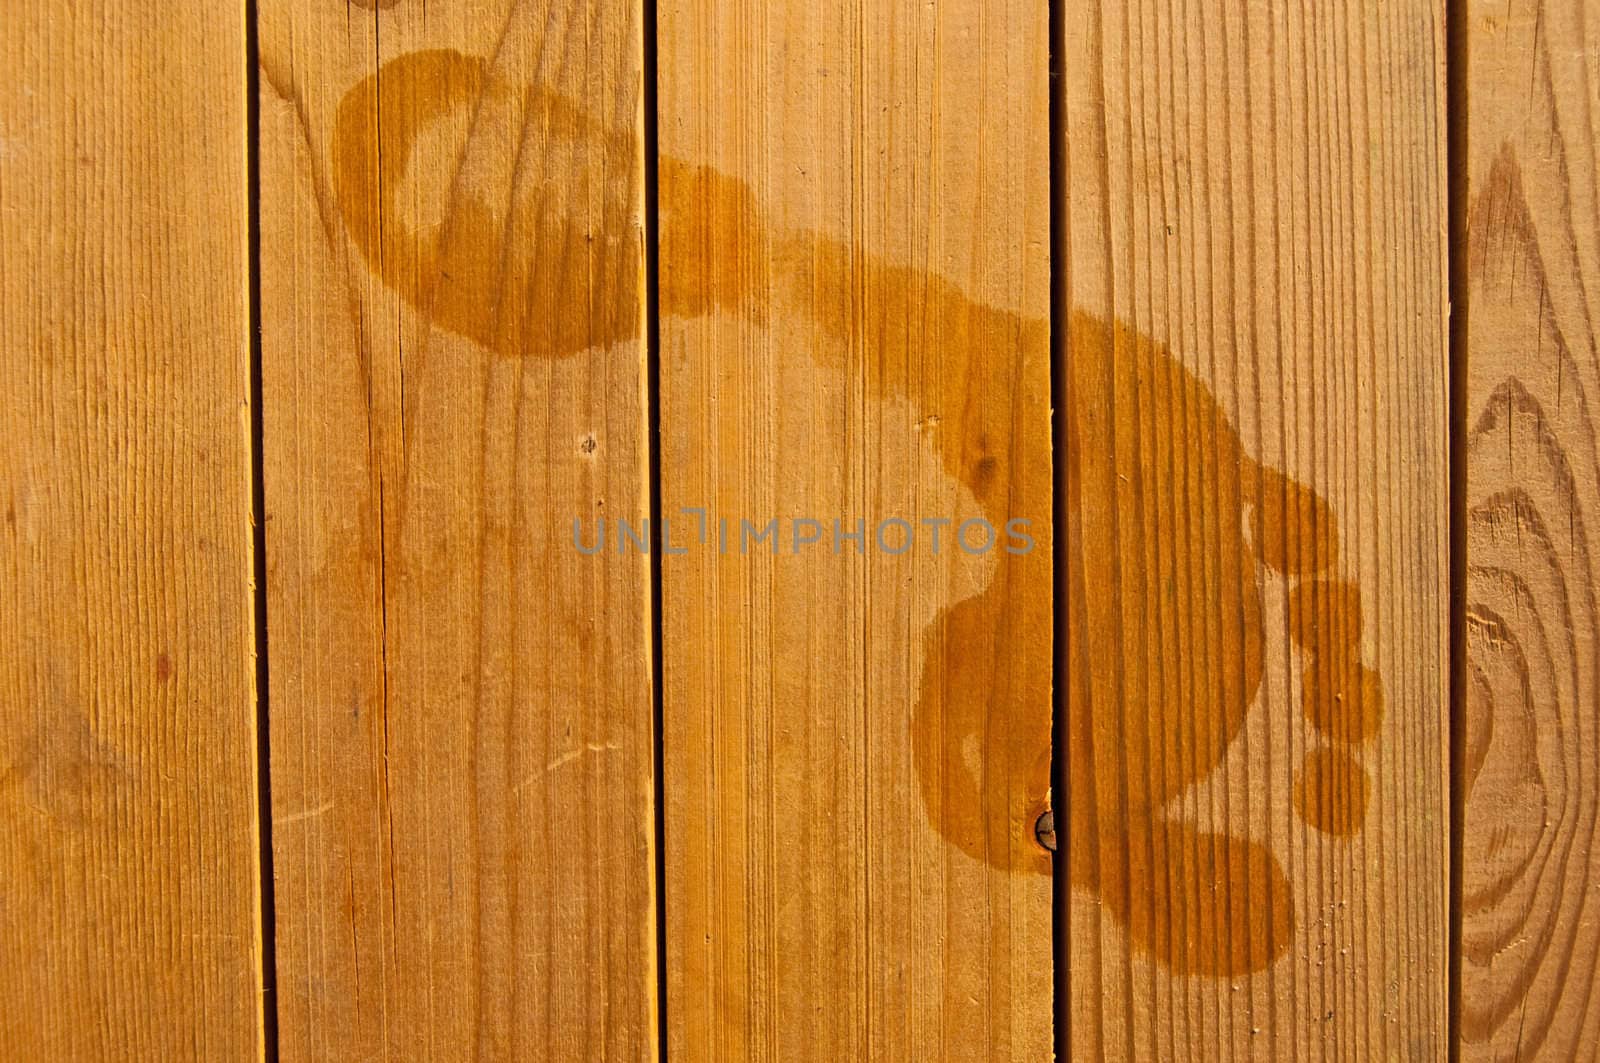 Footprints on wood by franz_hein